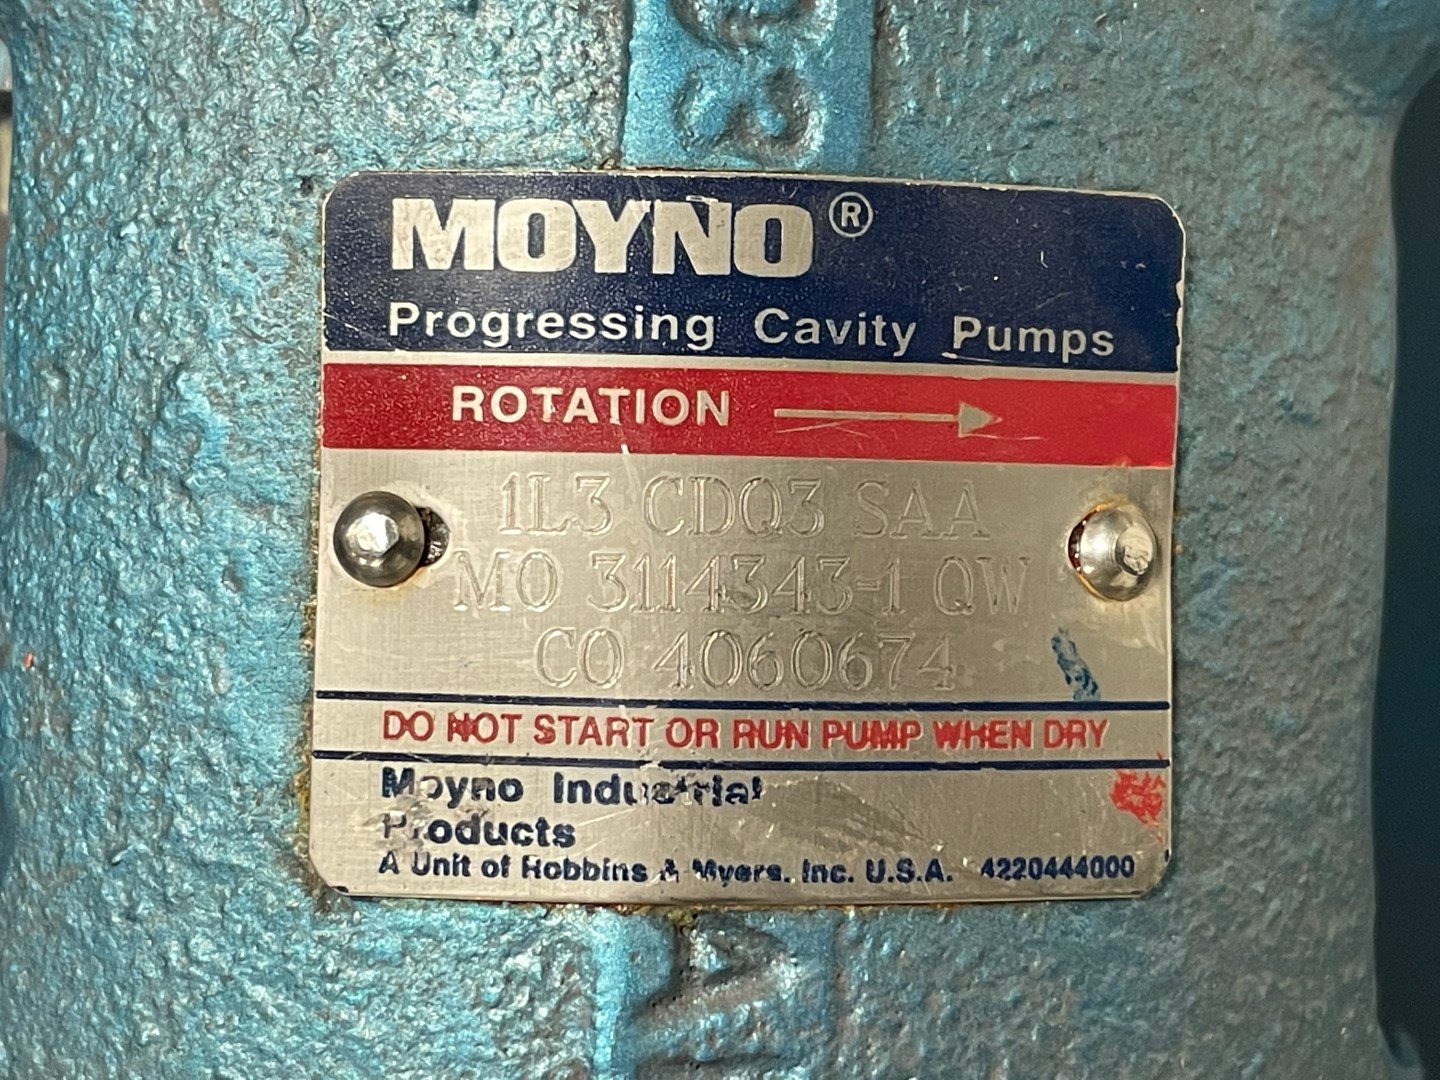 Moyno Progressive Cavity Pumps, Model 1L3 CDQ3 SAA, C/S, 5 HP (2)